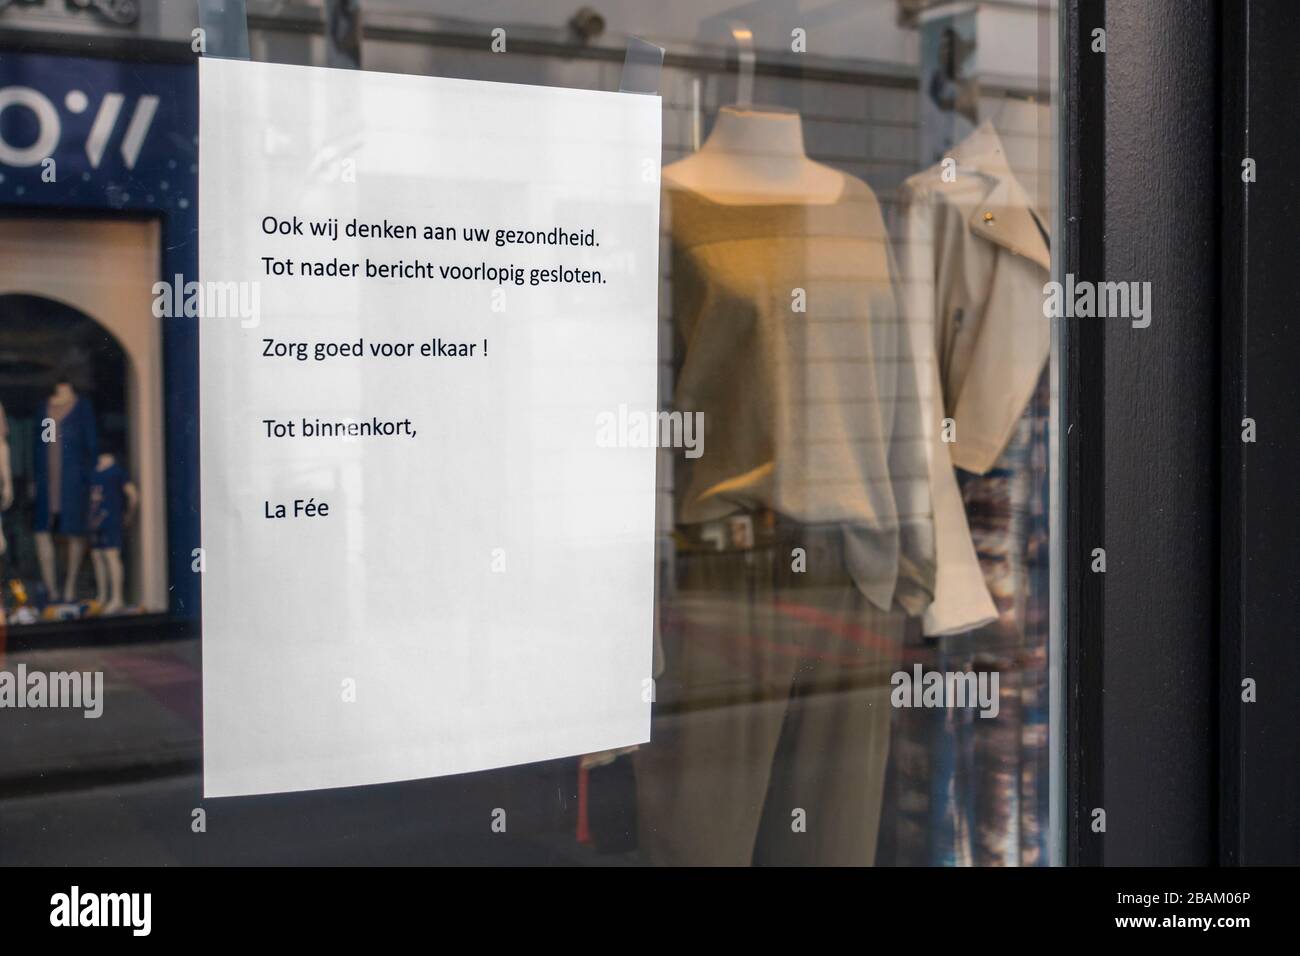 Die Abschlussmitteilung des Kleidergeschäfts in der Einkaufsstraße aufgrund der COVID-19 von 2020/Coronavirus/Corona-Virus-Pandemie in der Stadt Gent, Belgien Stockfoto